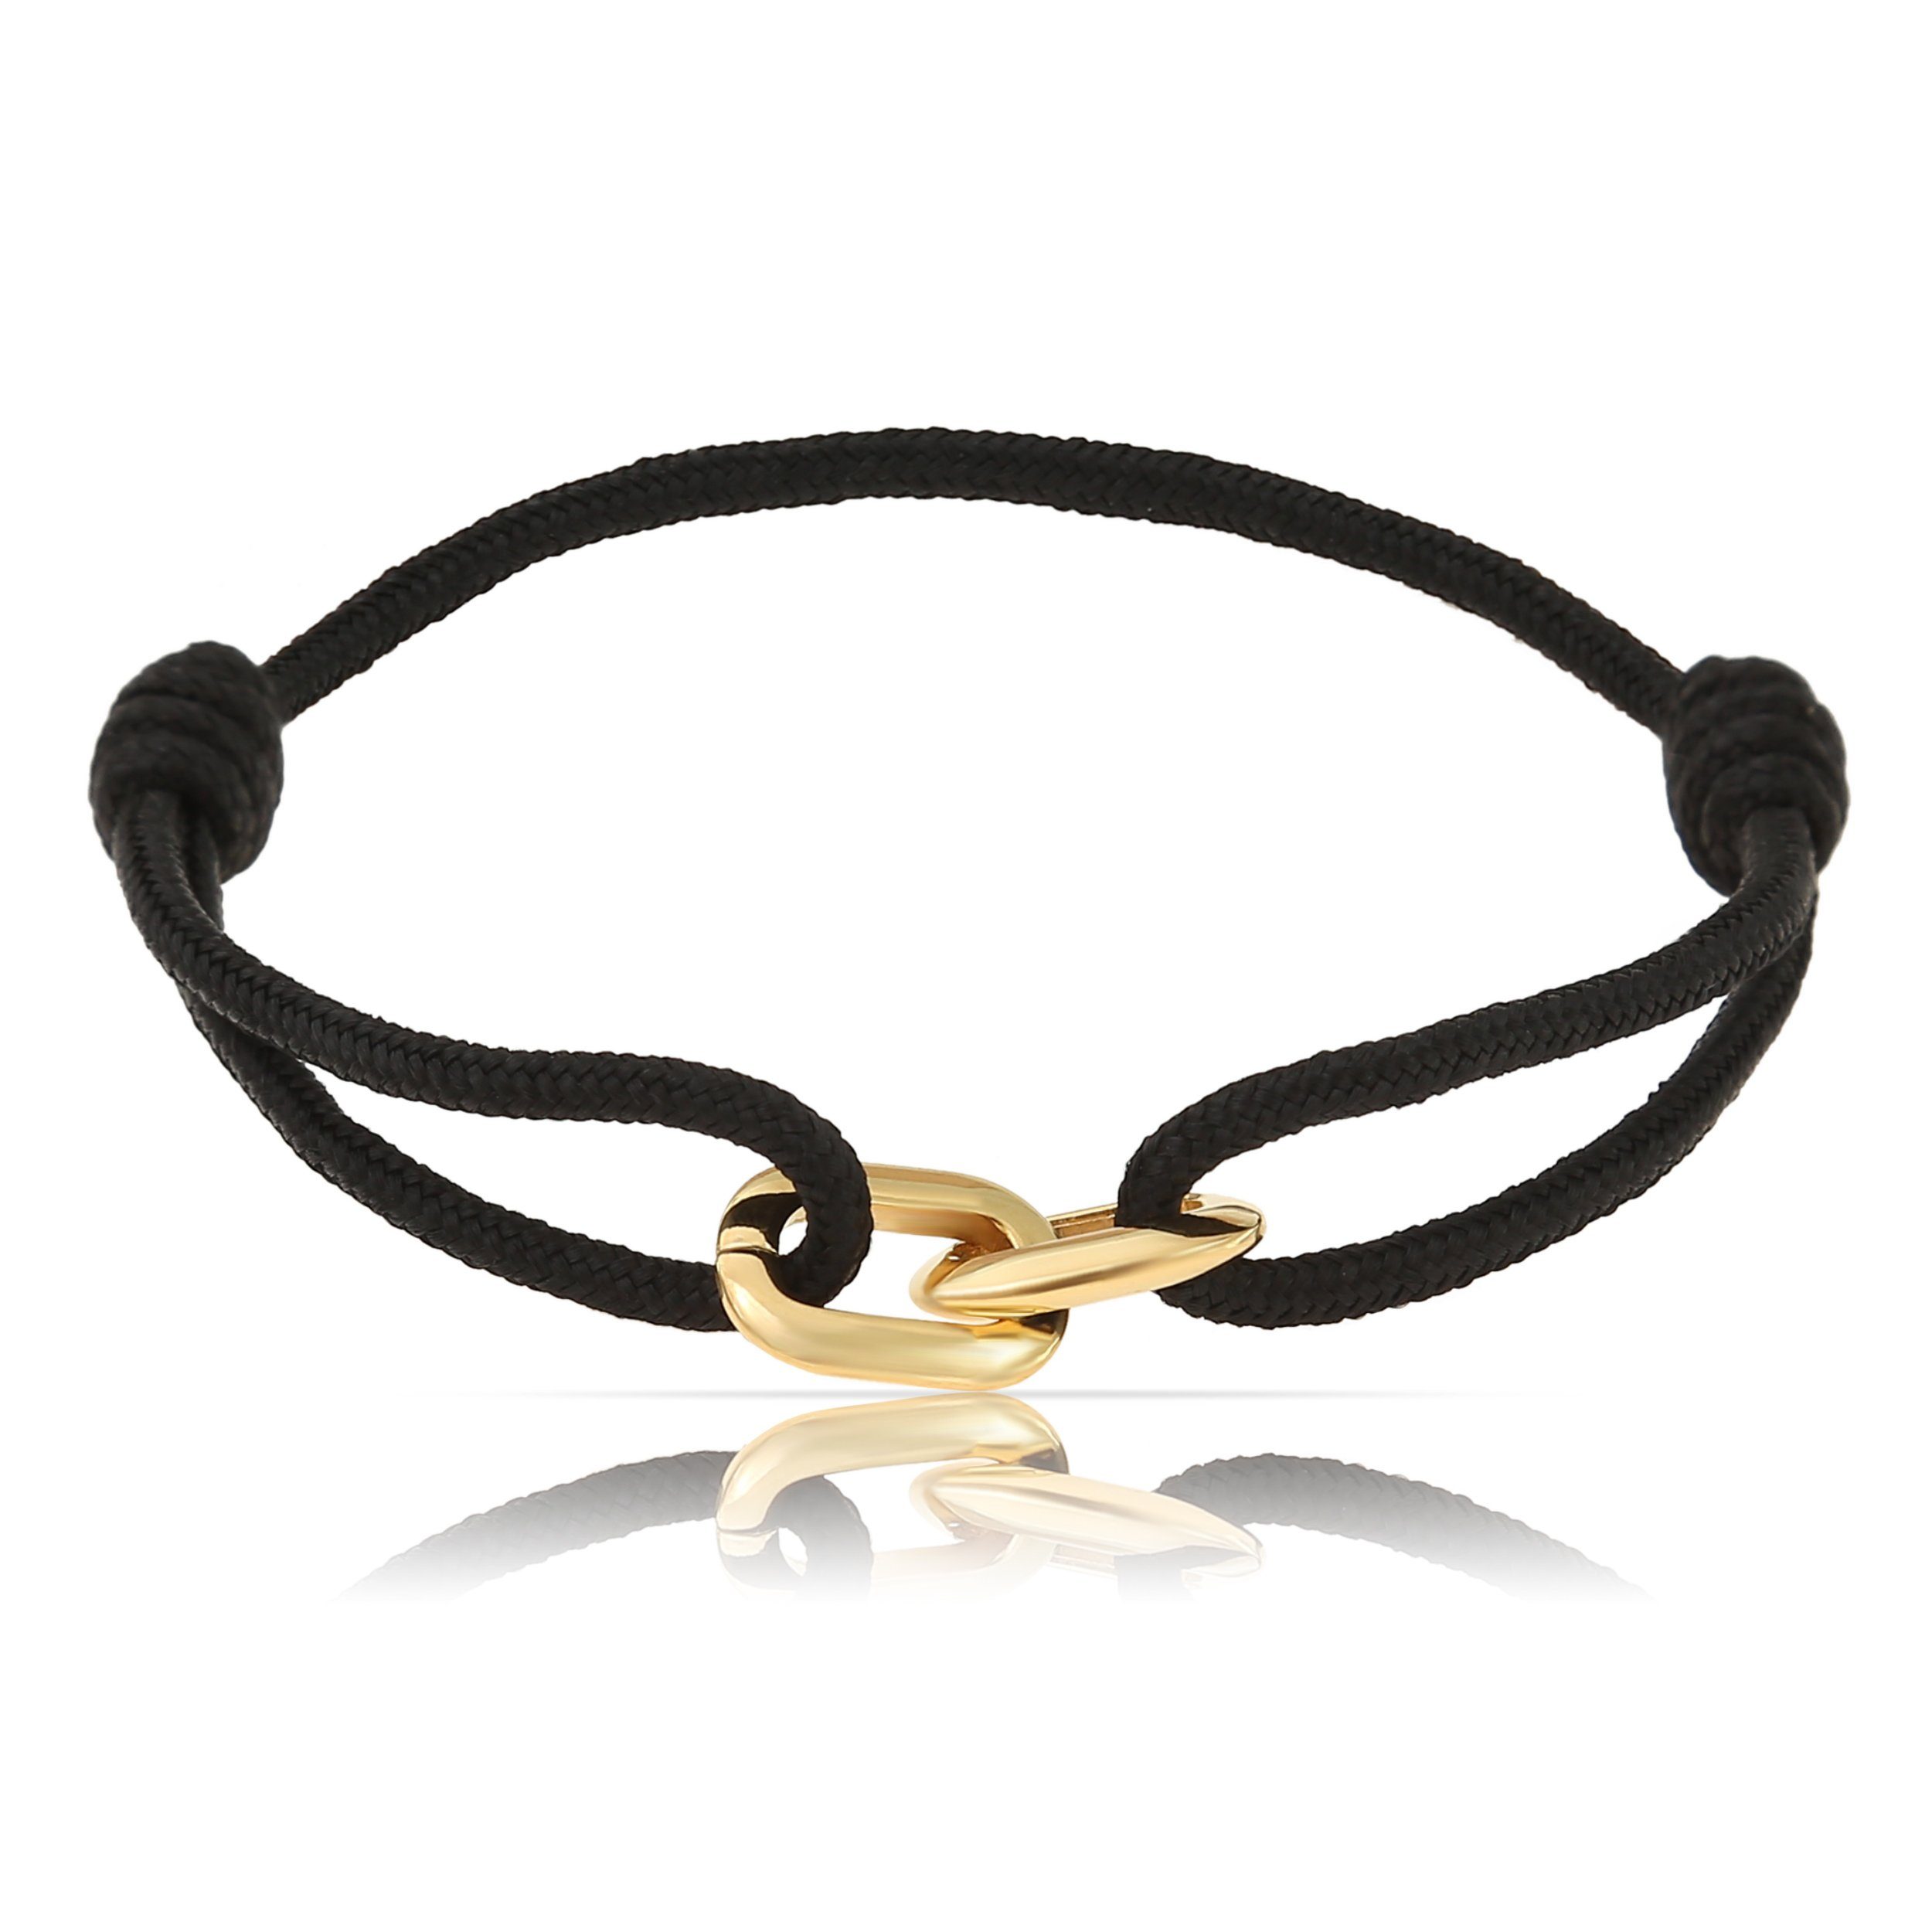 Made by Nami Armband Wasserfest Schwarz Handgemacht, Armband Gold Surfer Herren Verstellbar Armband Segeltau Armband Minimalistisches Armband Damen